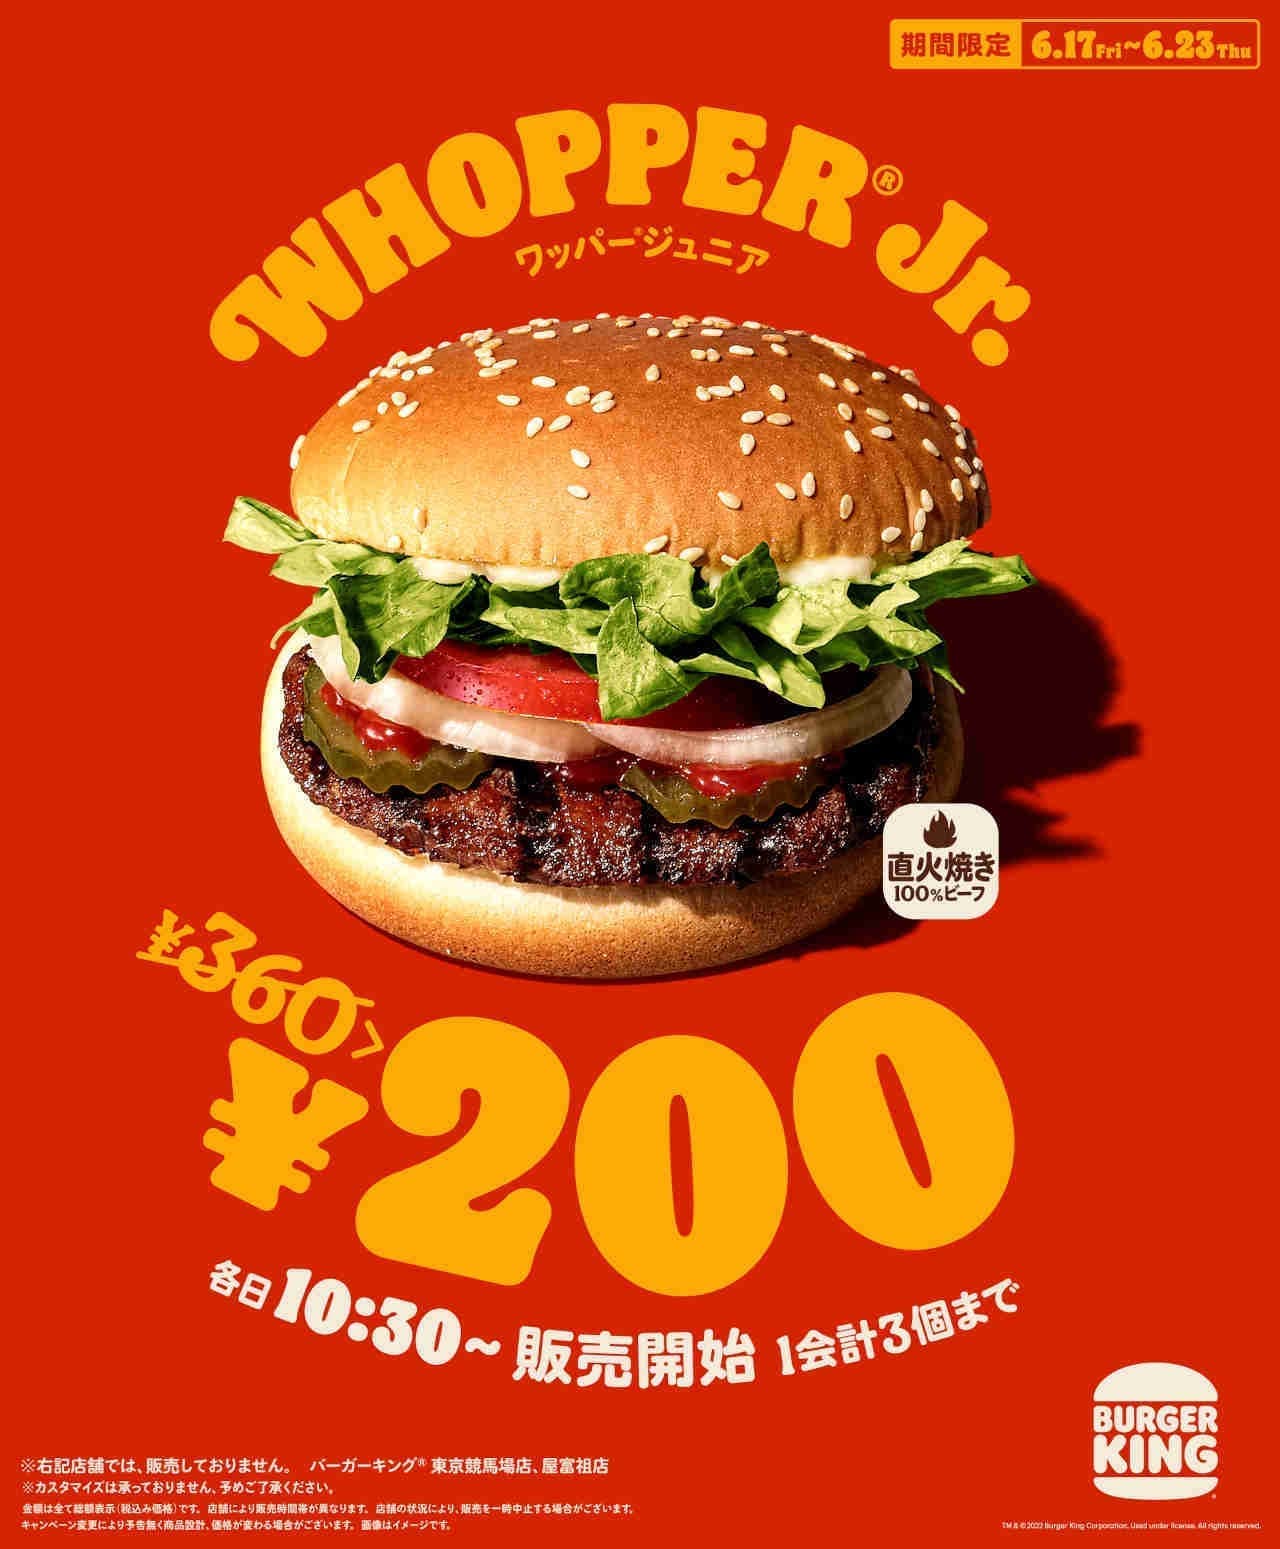 Burger King "Whopper Junior